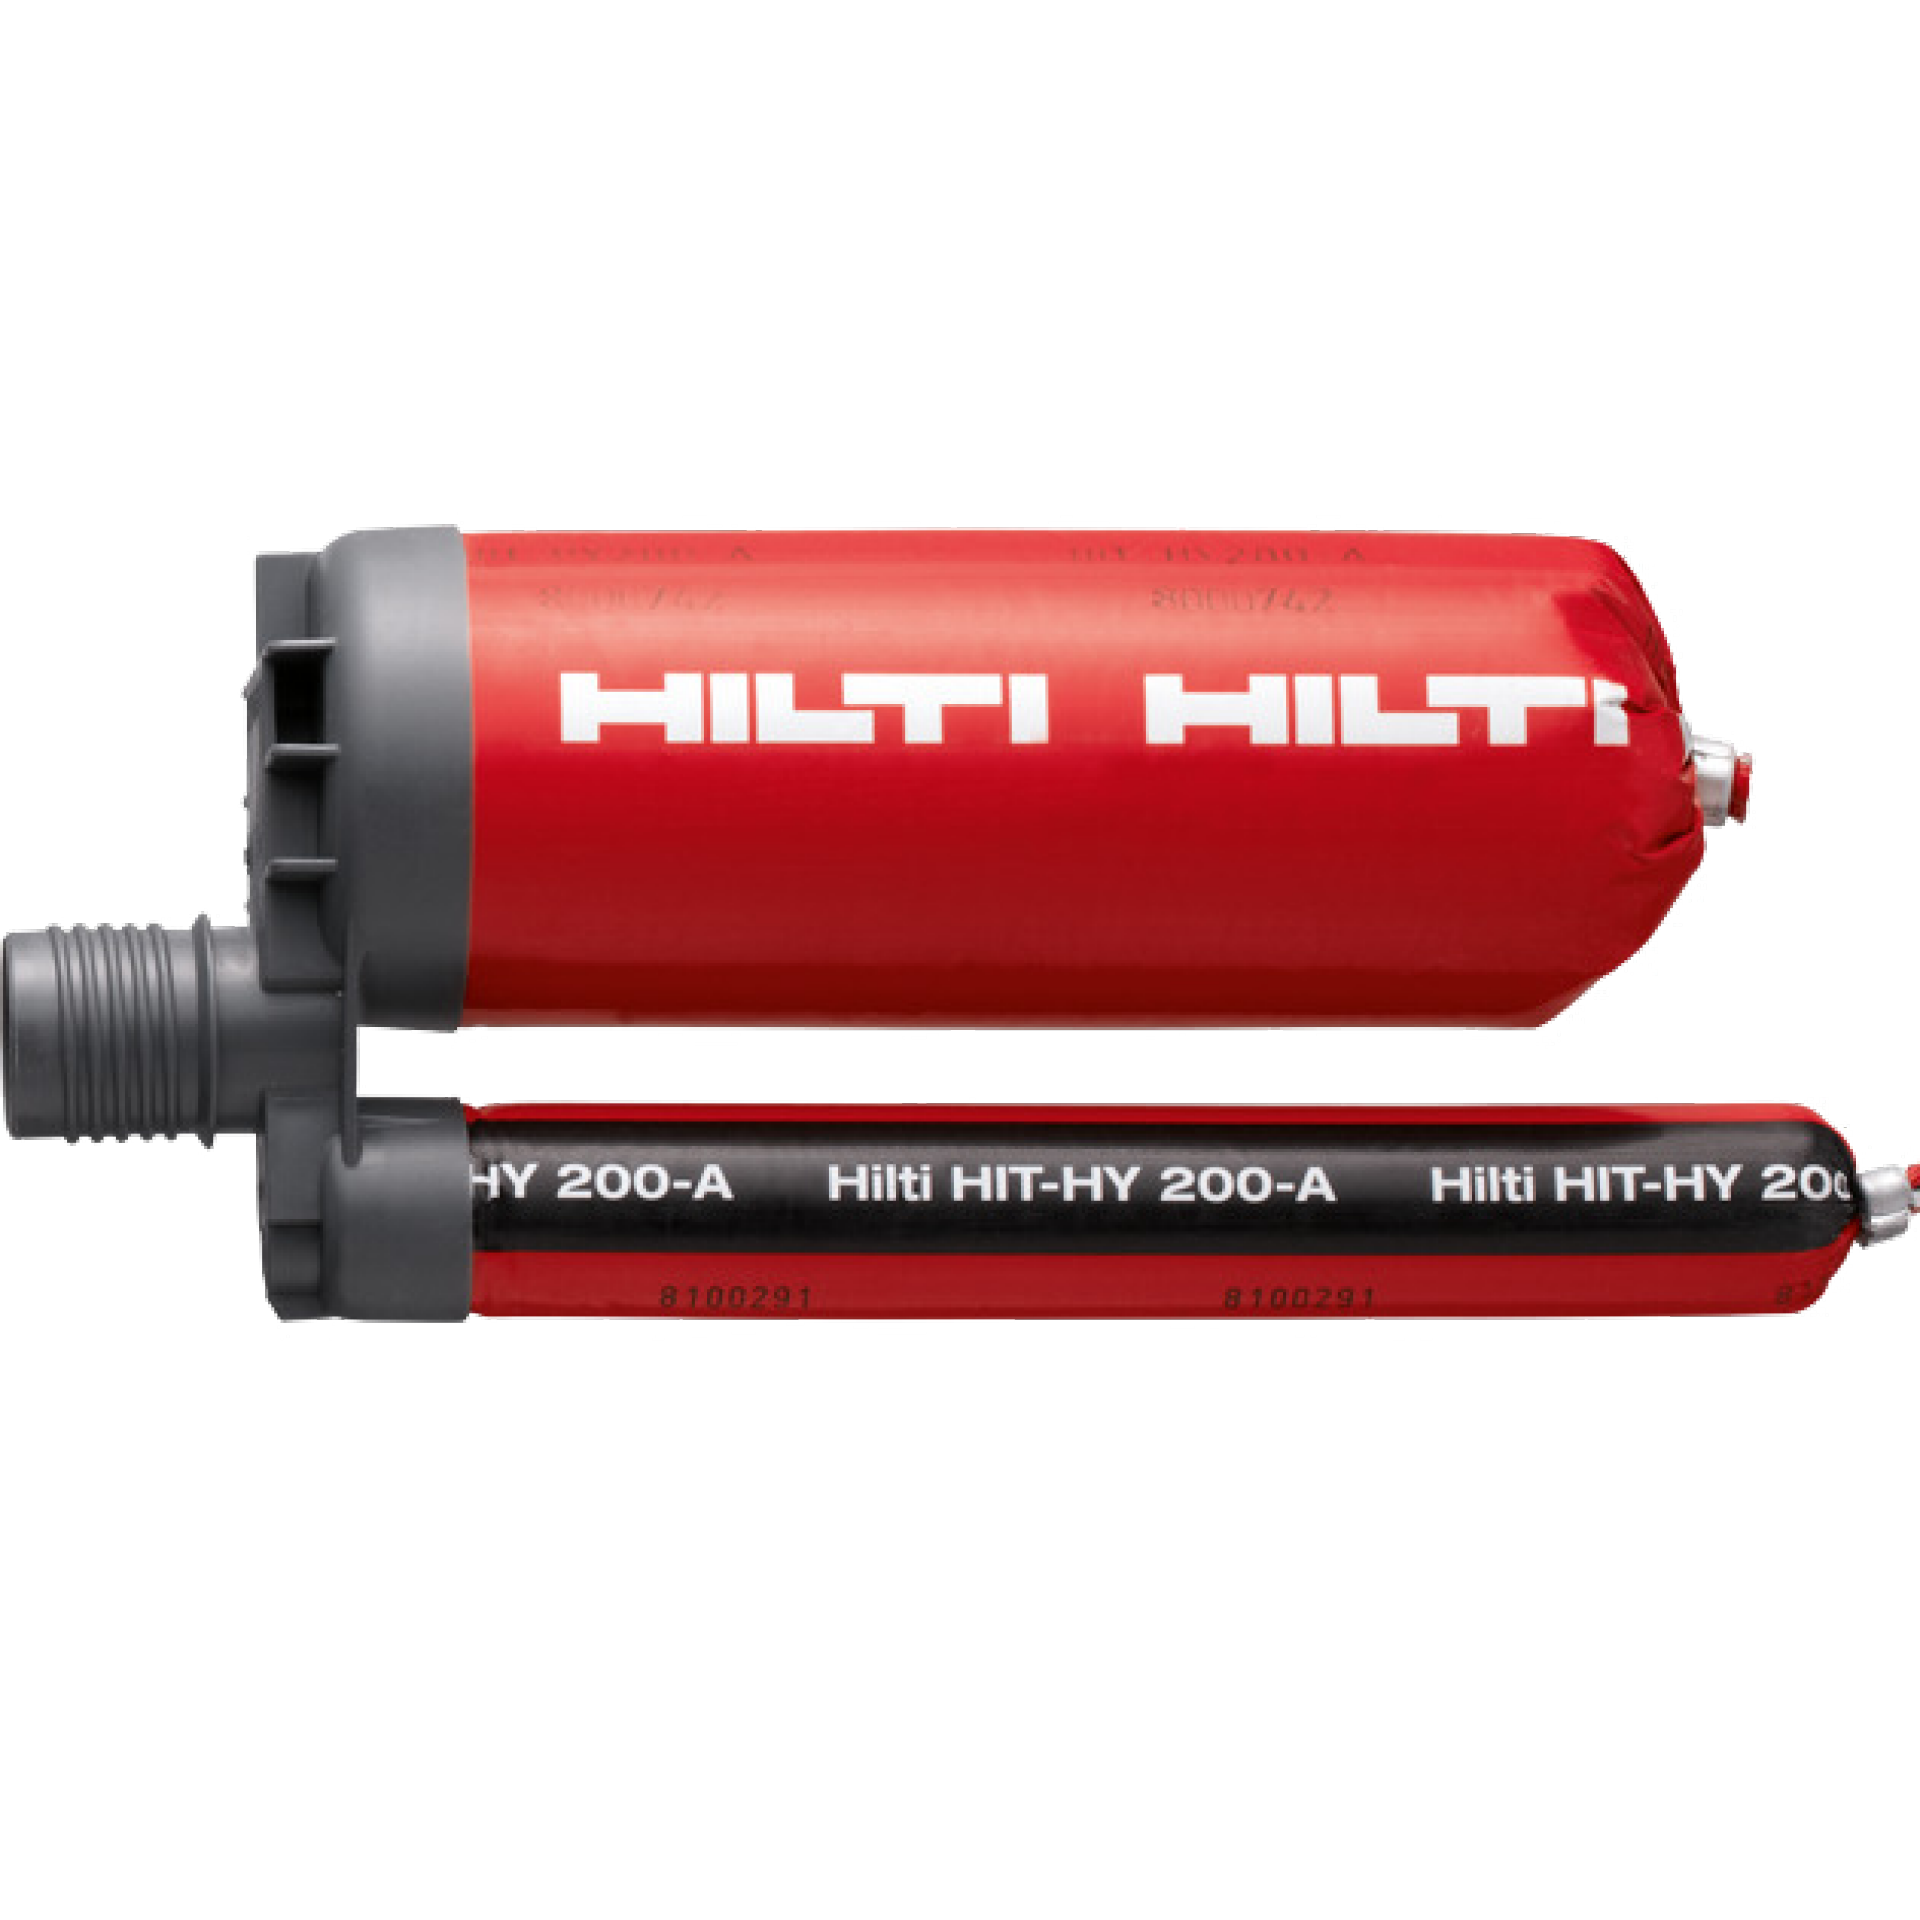 HIT-HY 200-A hybridmassa med hög prestanda för tunga infästningar och armering, ingår i Hilti SafeSet-systemet